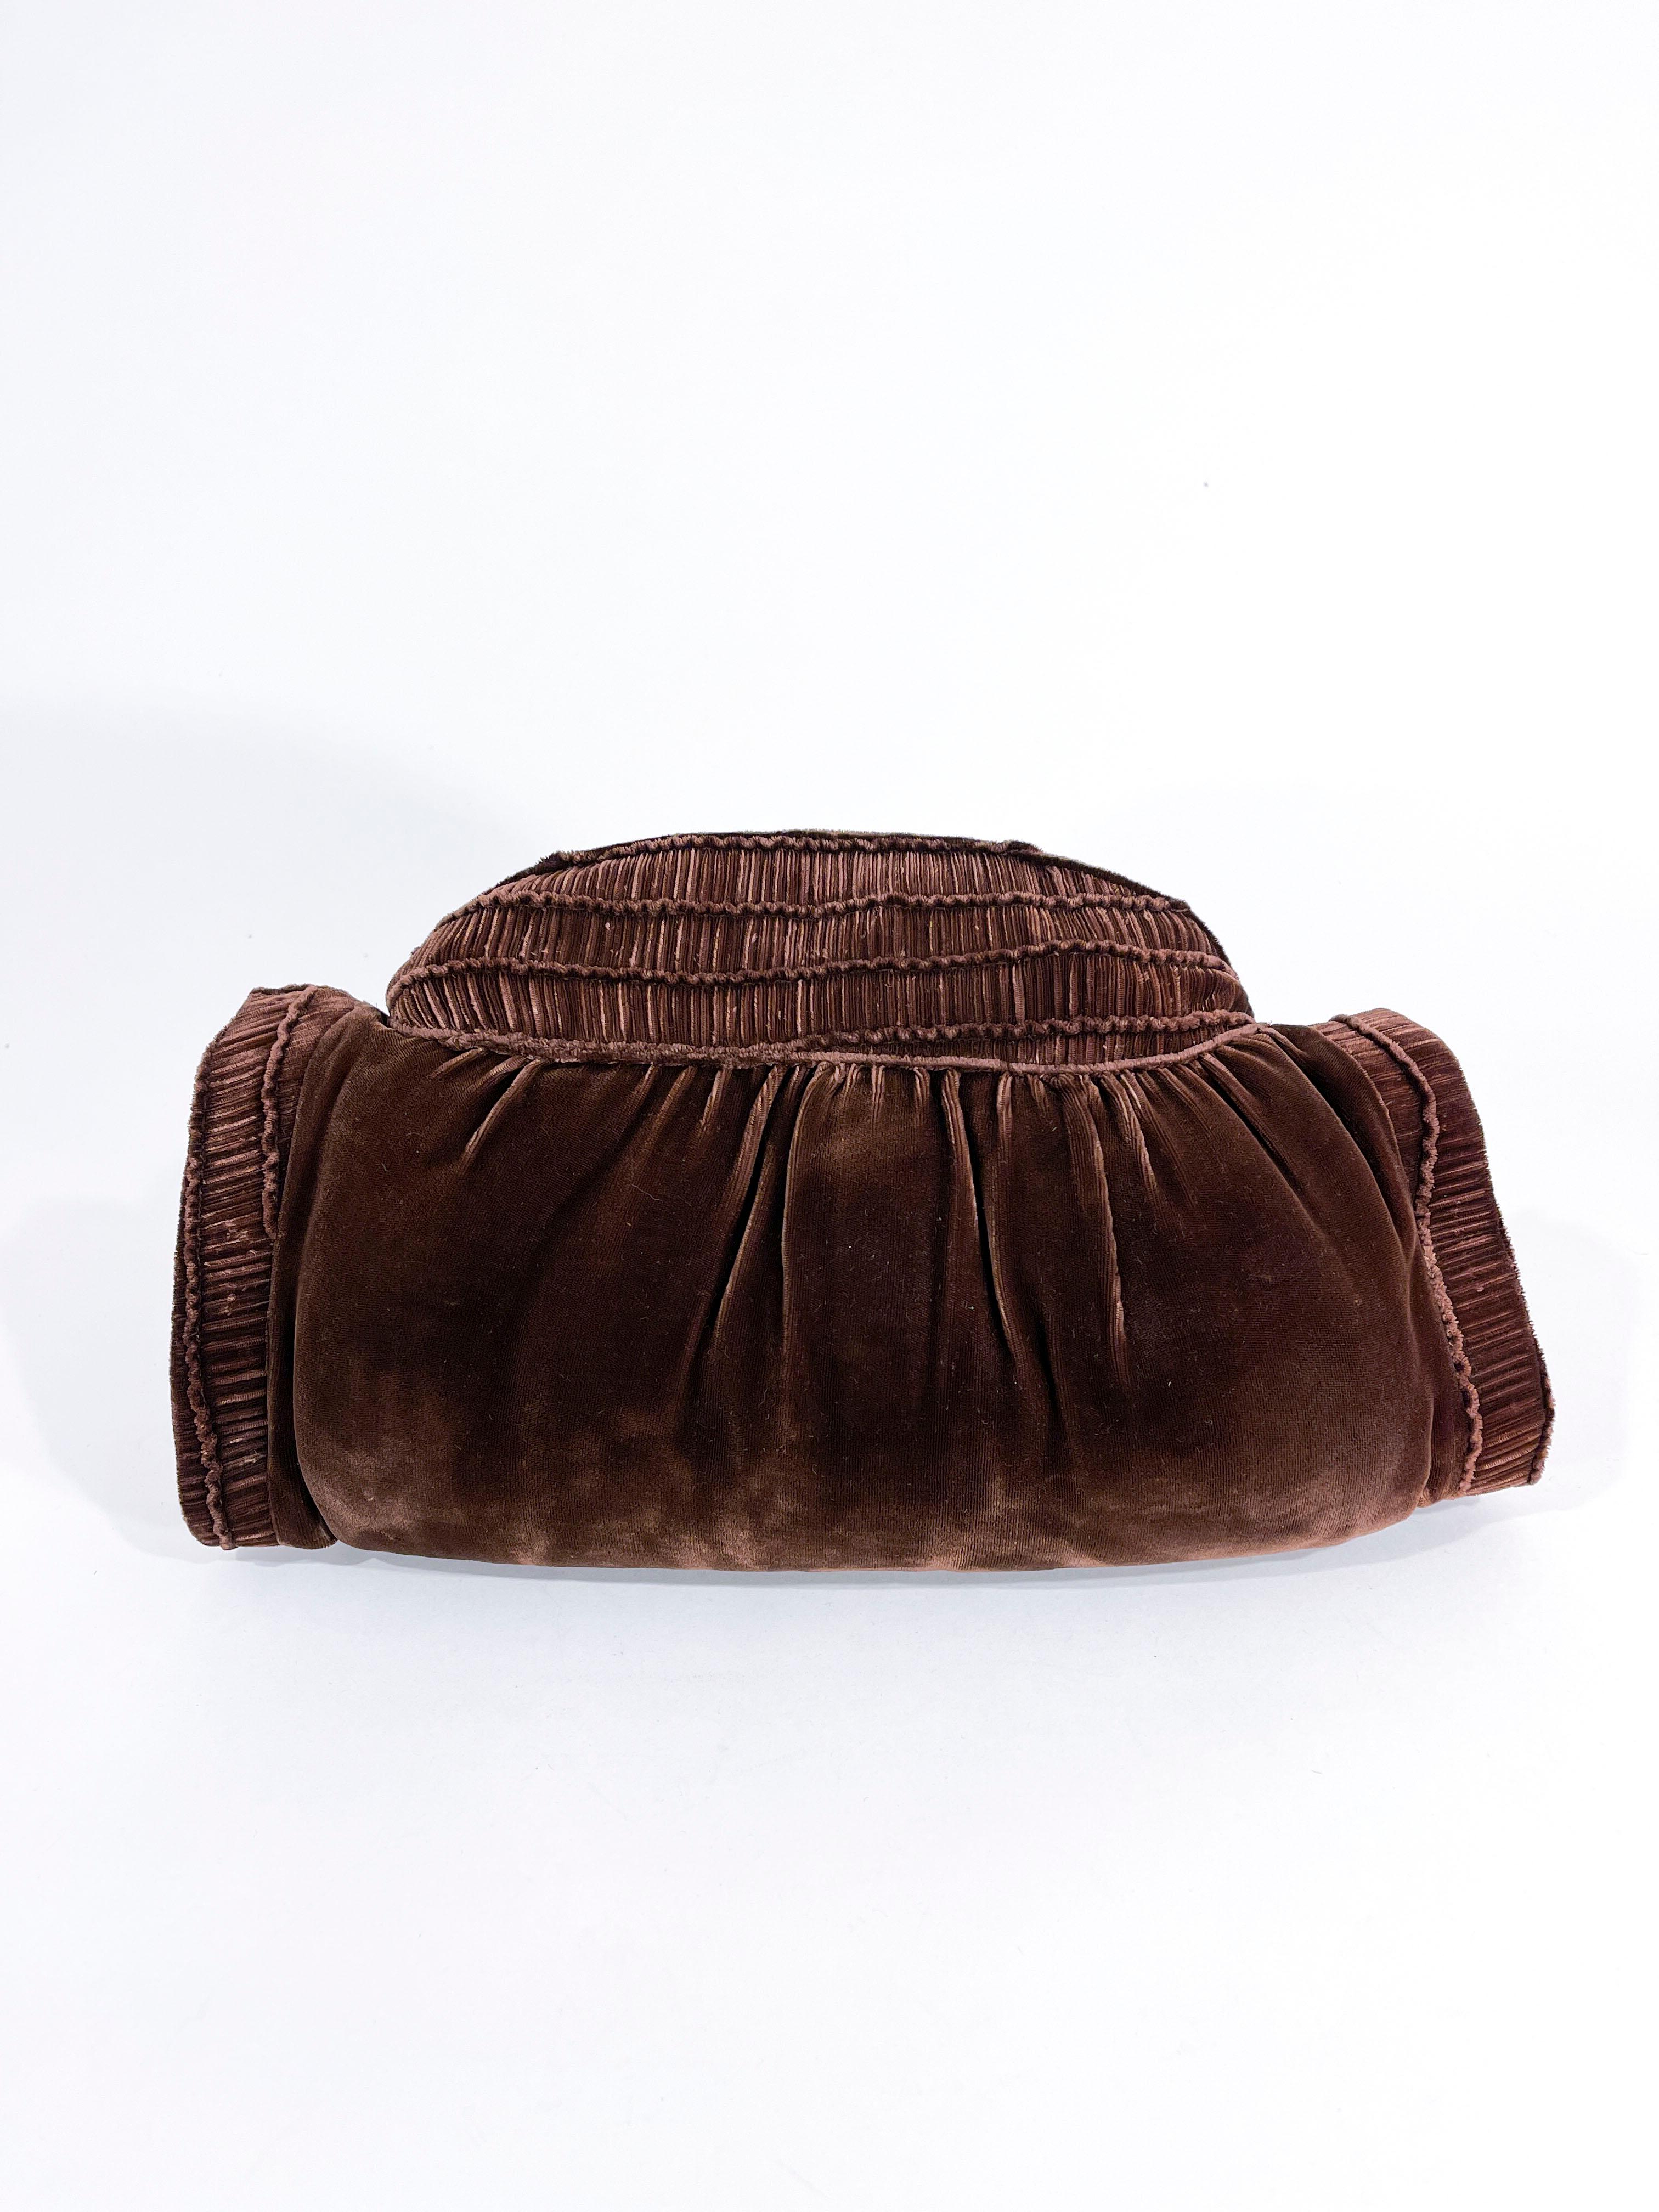 kakaobraune Seidensamt-Handtasche/Muff aus den 1930er Jahren mit detaillierten Rüschen entlang des Oberteils und der Armöffnungen. Die Oberseite hat ein Reißverschlussfach mit einem geätzten Zelluloid-Reißverschluss-Zug und Messinggliedern. Der